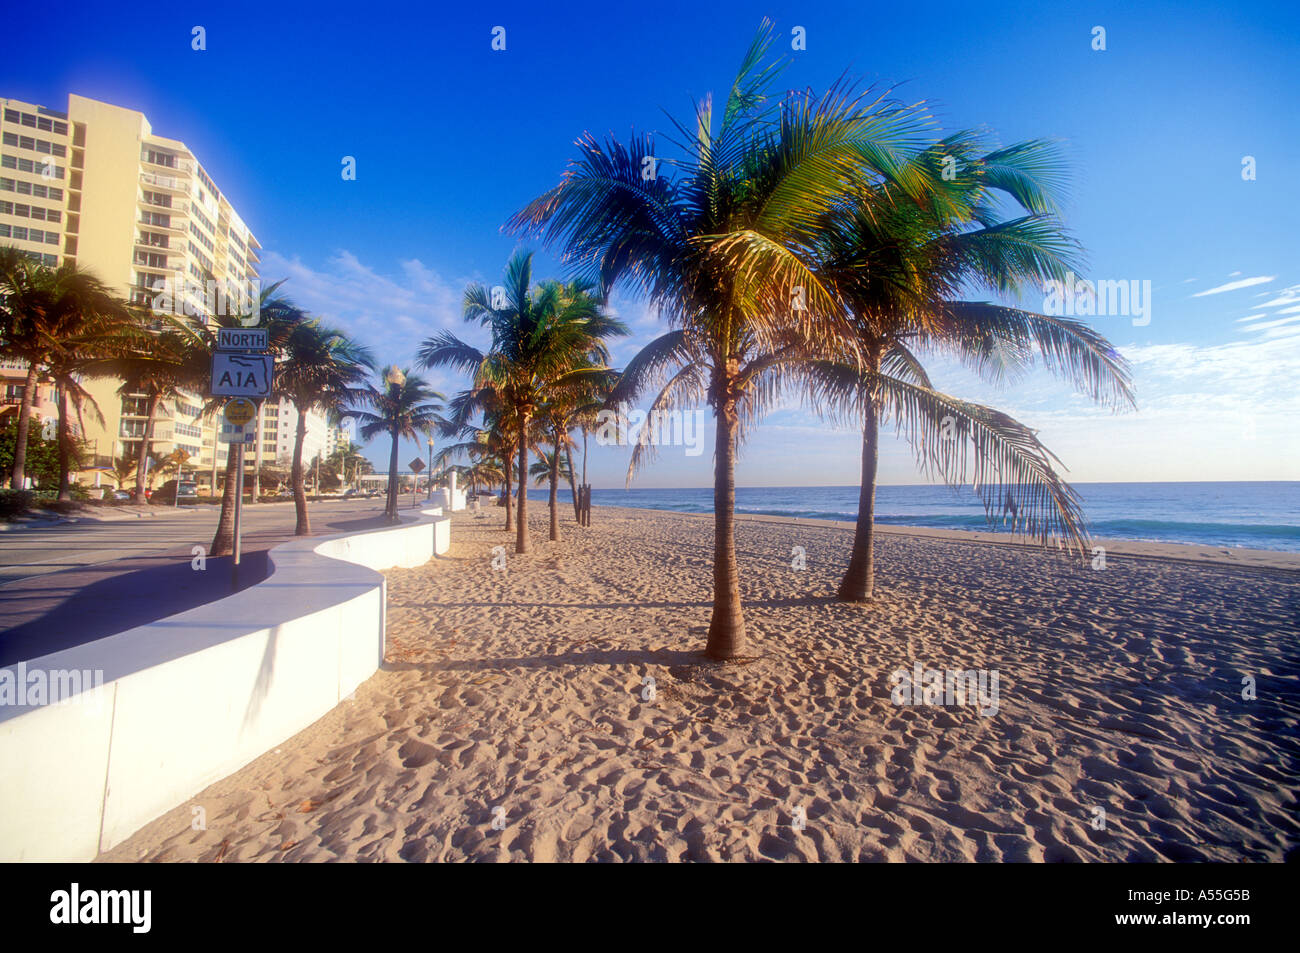 Palmiers sur la plage à Ft Lauderdale Florida USA Banque D'Images